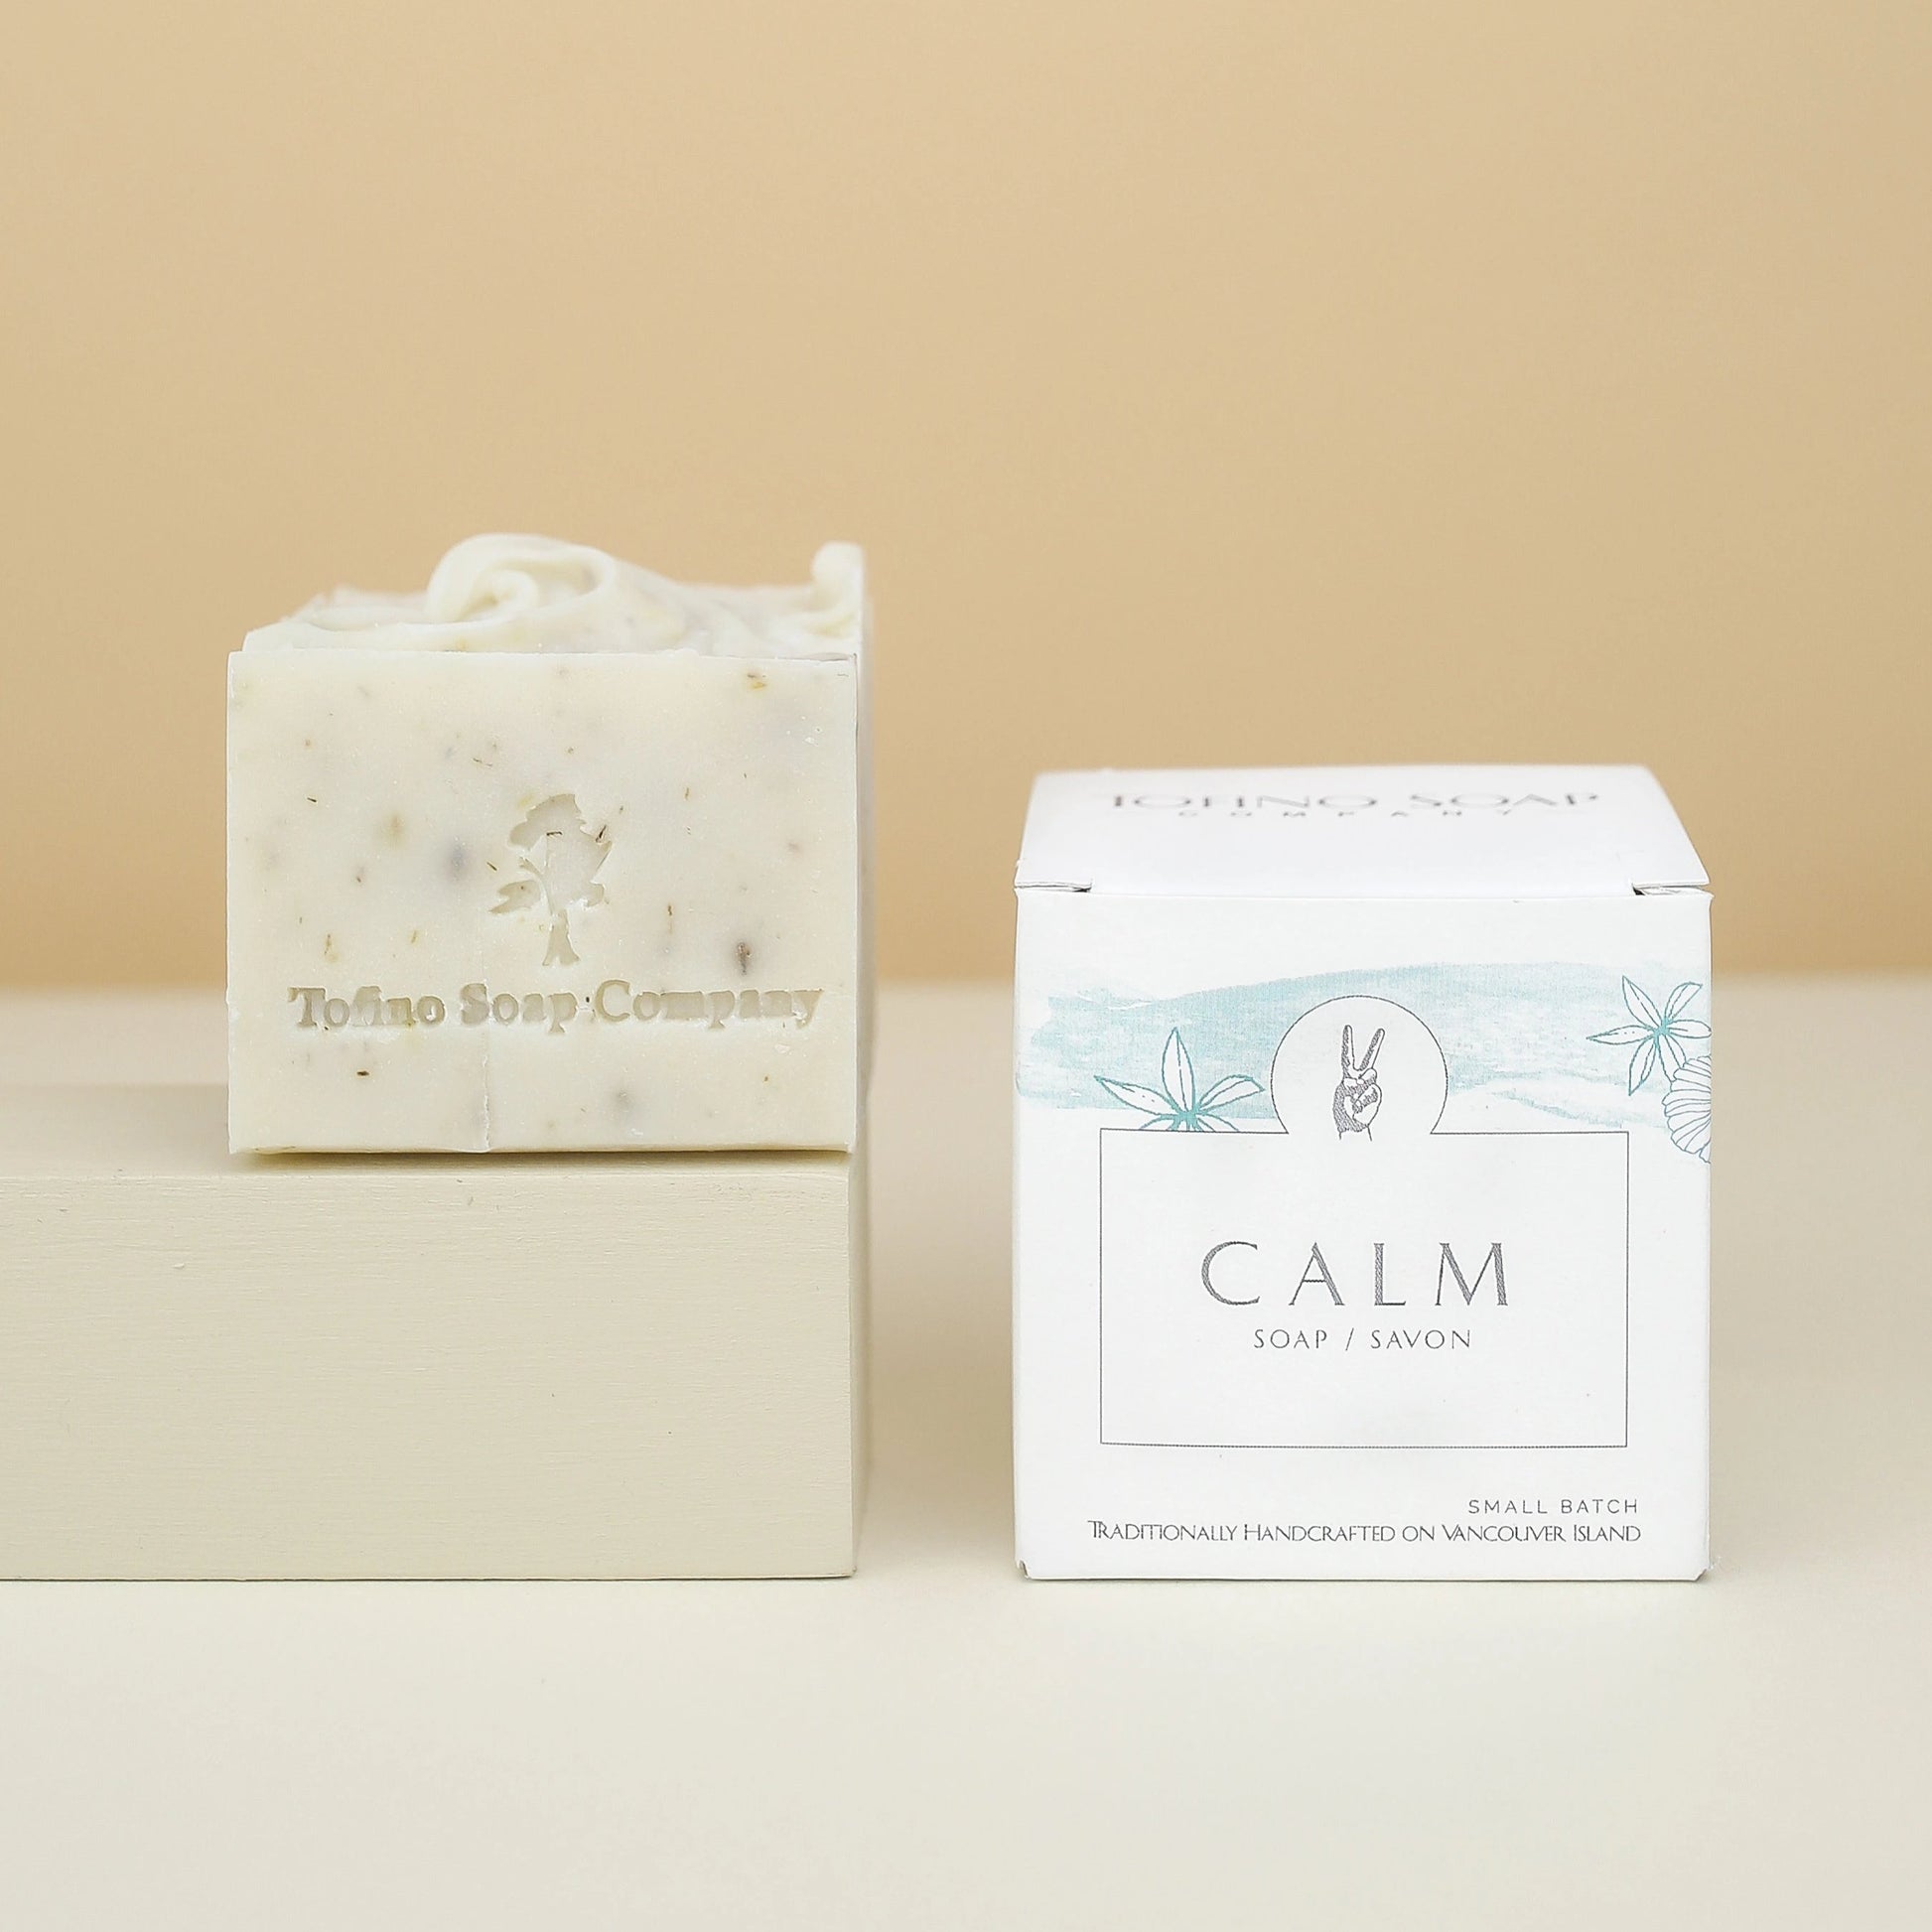 Tofino Soap | Calm - Tofino Soap Company ®